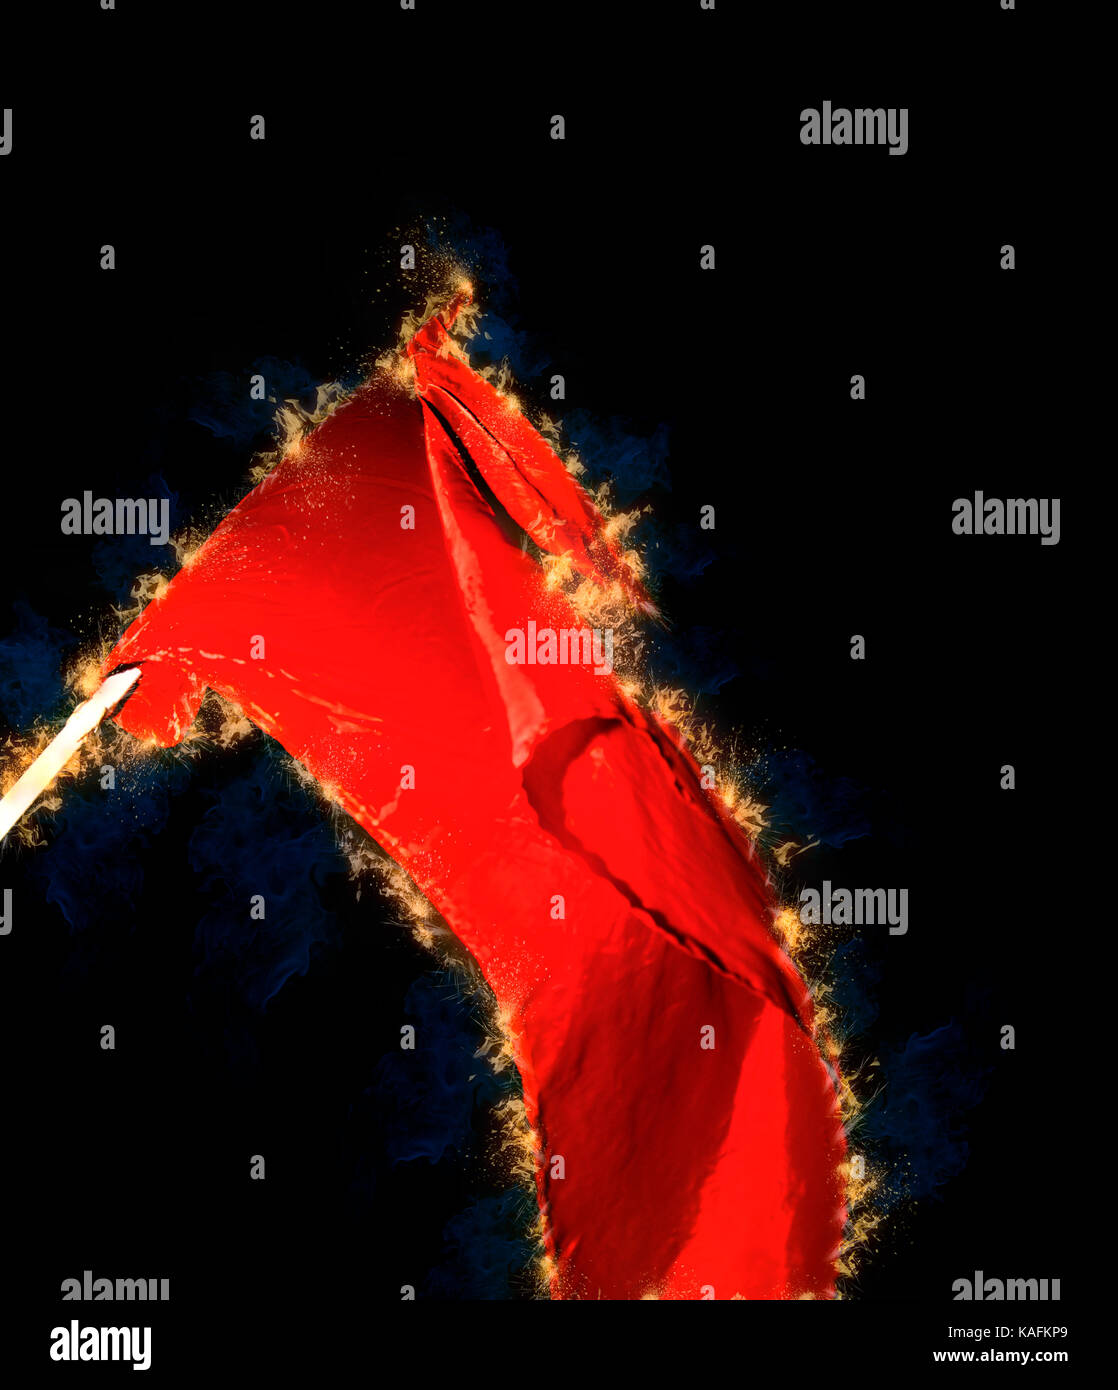 Image de l'amélioré numériquement mouvement communiste rouge d'un drapeau de haut vol au cours d'une manifestation Banque D'Images